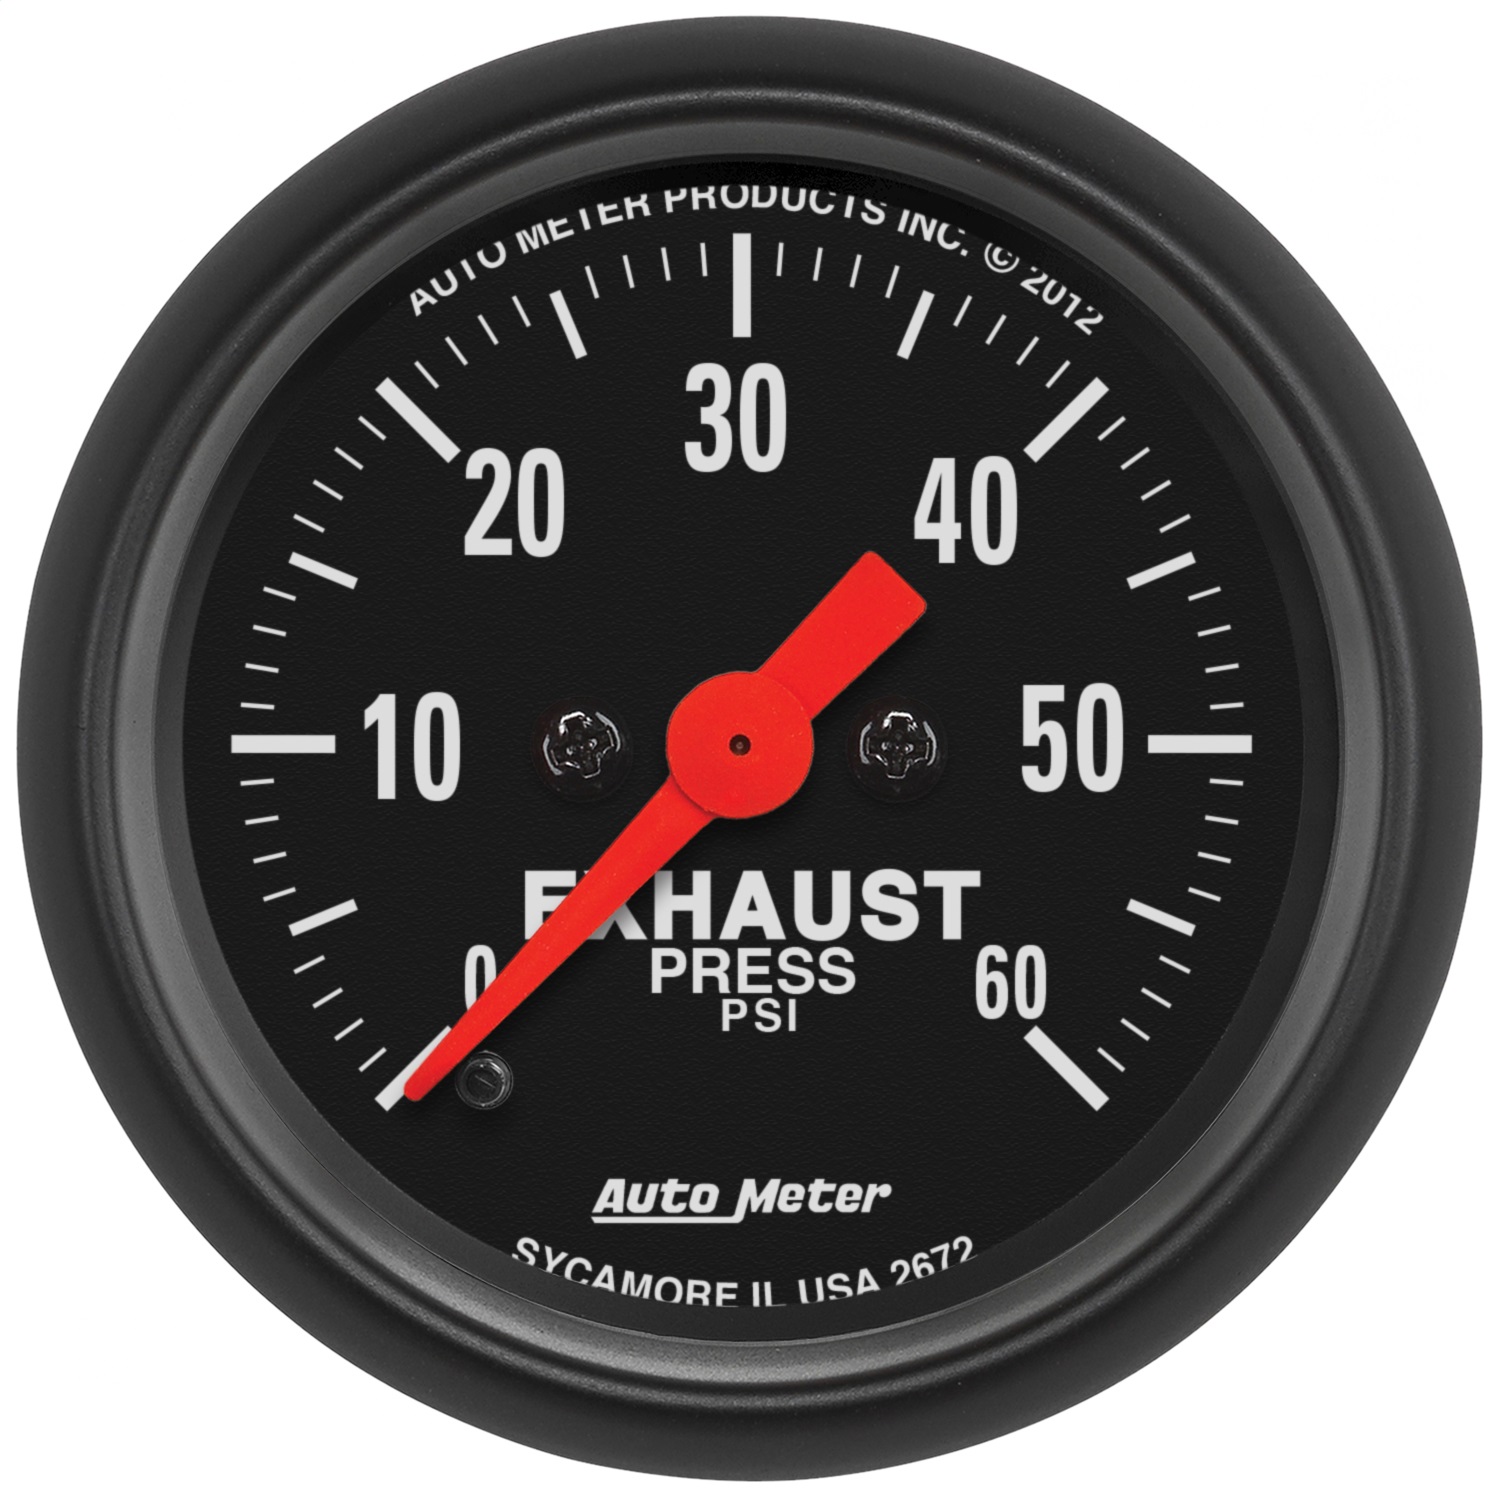 Auto Meter Auto Meter 2672 Z-Series; Exhaust Pressure Gauge